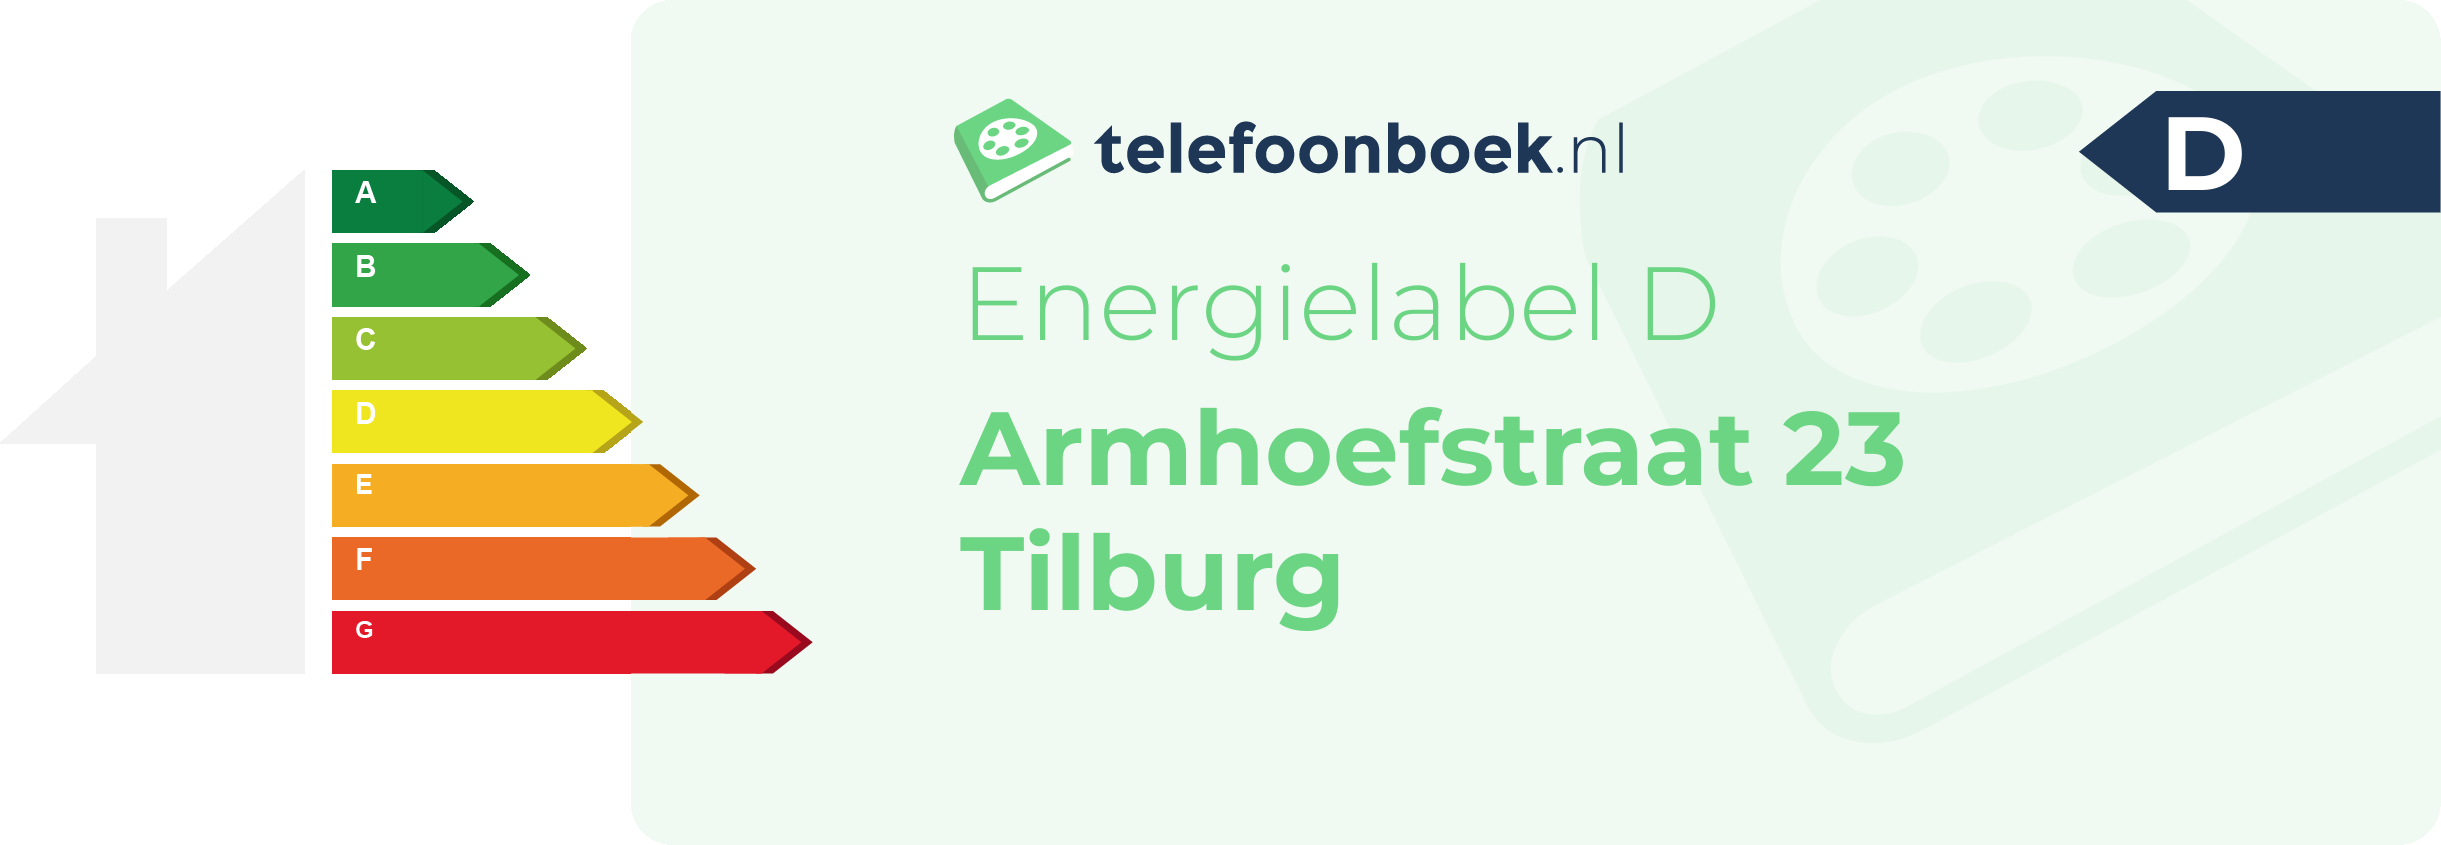 Energielabel Armhoefstraat 23 Tilburg